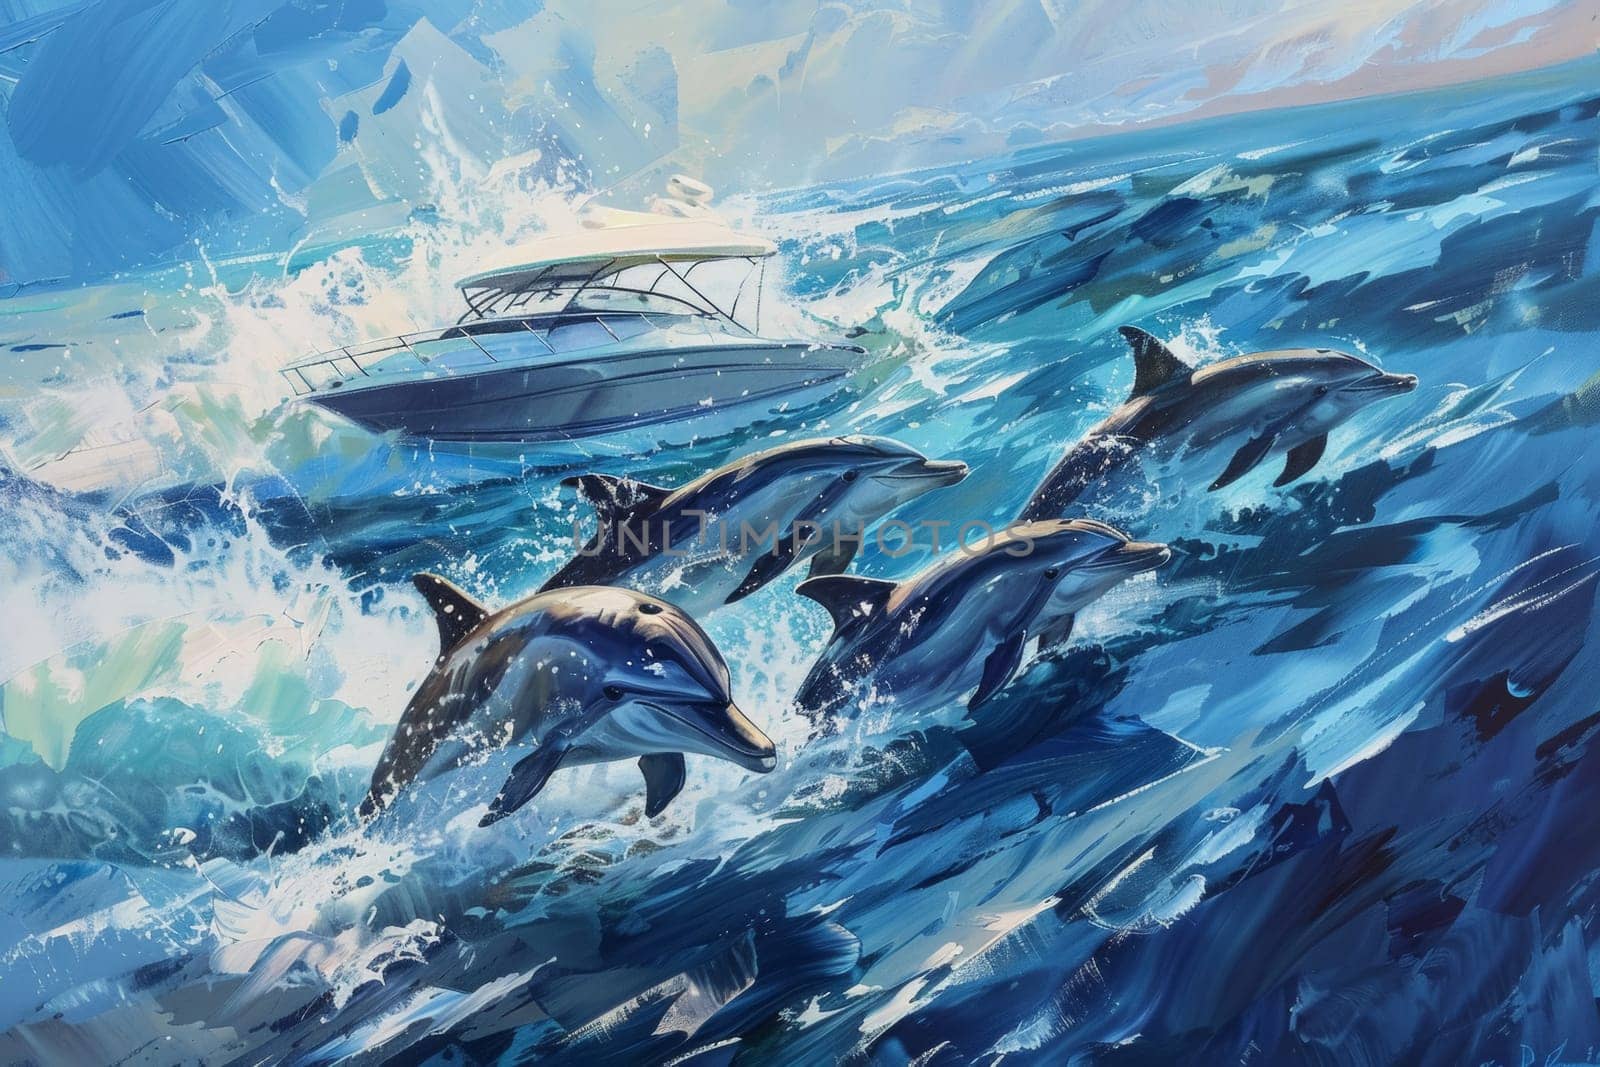 A vibrant painting captures dolphins leaping joyfully alongside a speeding yacht on a sun-kissed ocean.